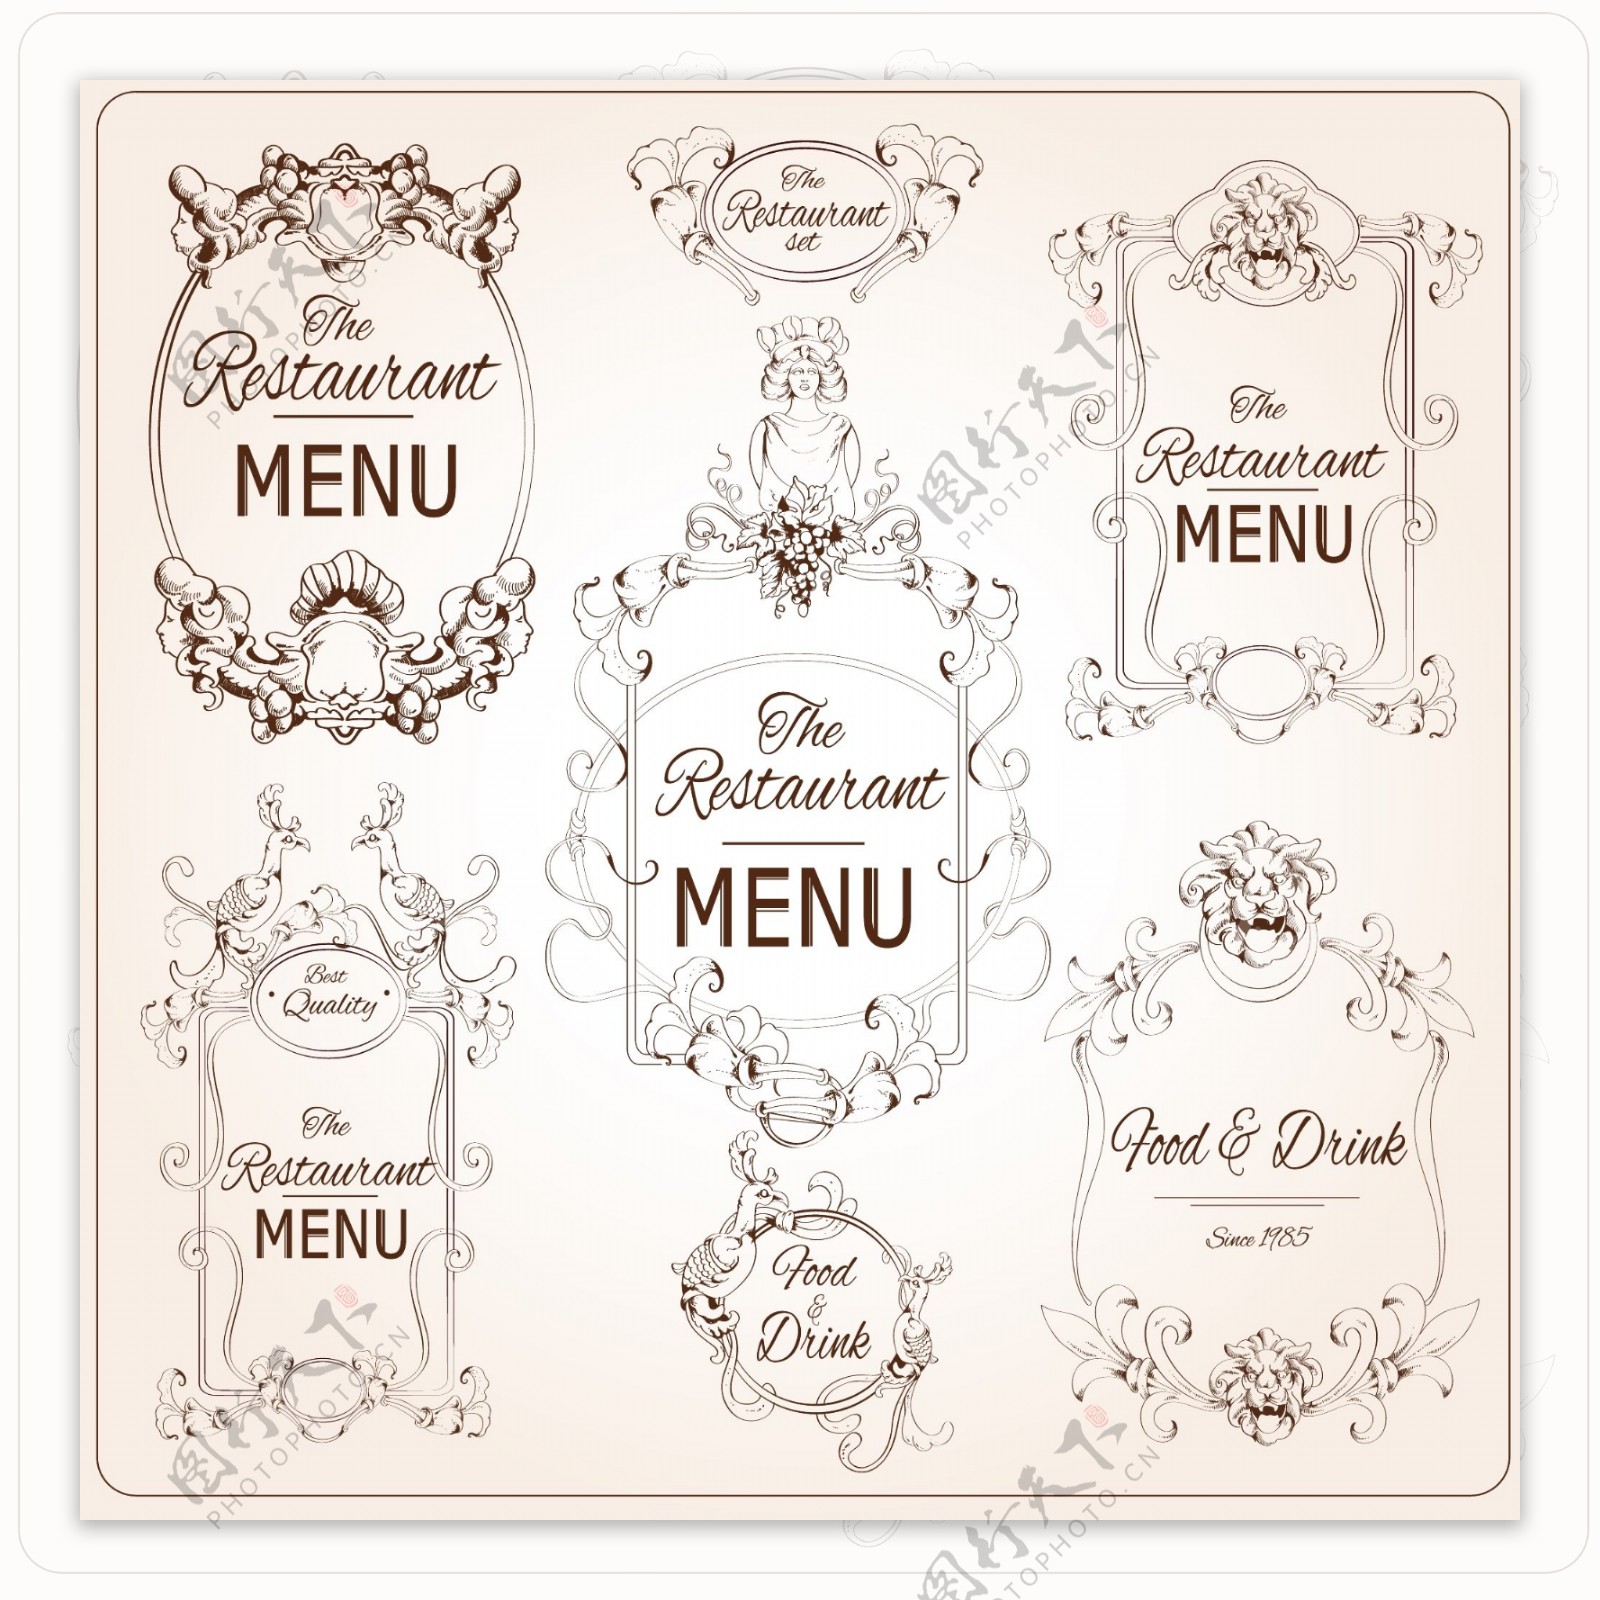 优雅的花香书法复古风格的餐厅菜单标签矢量图